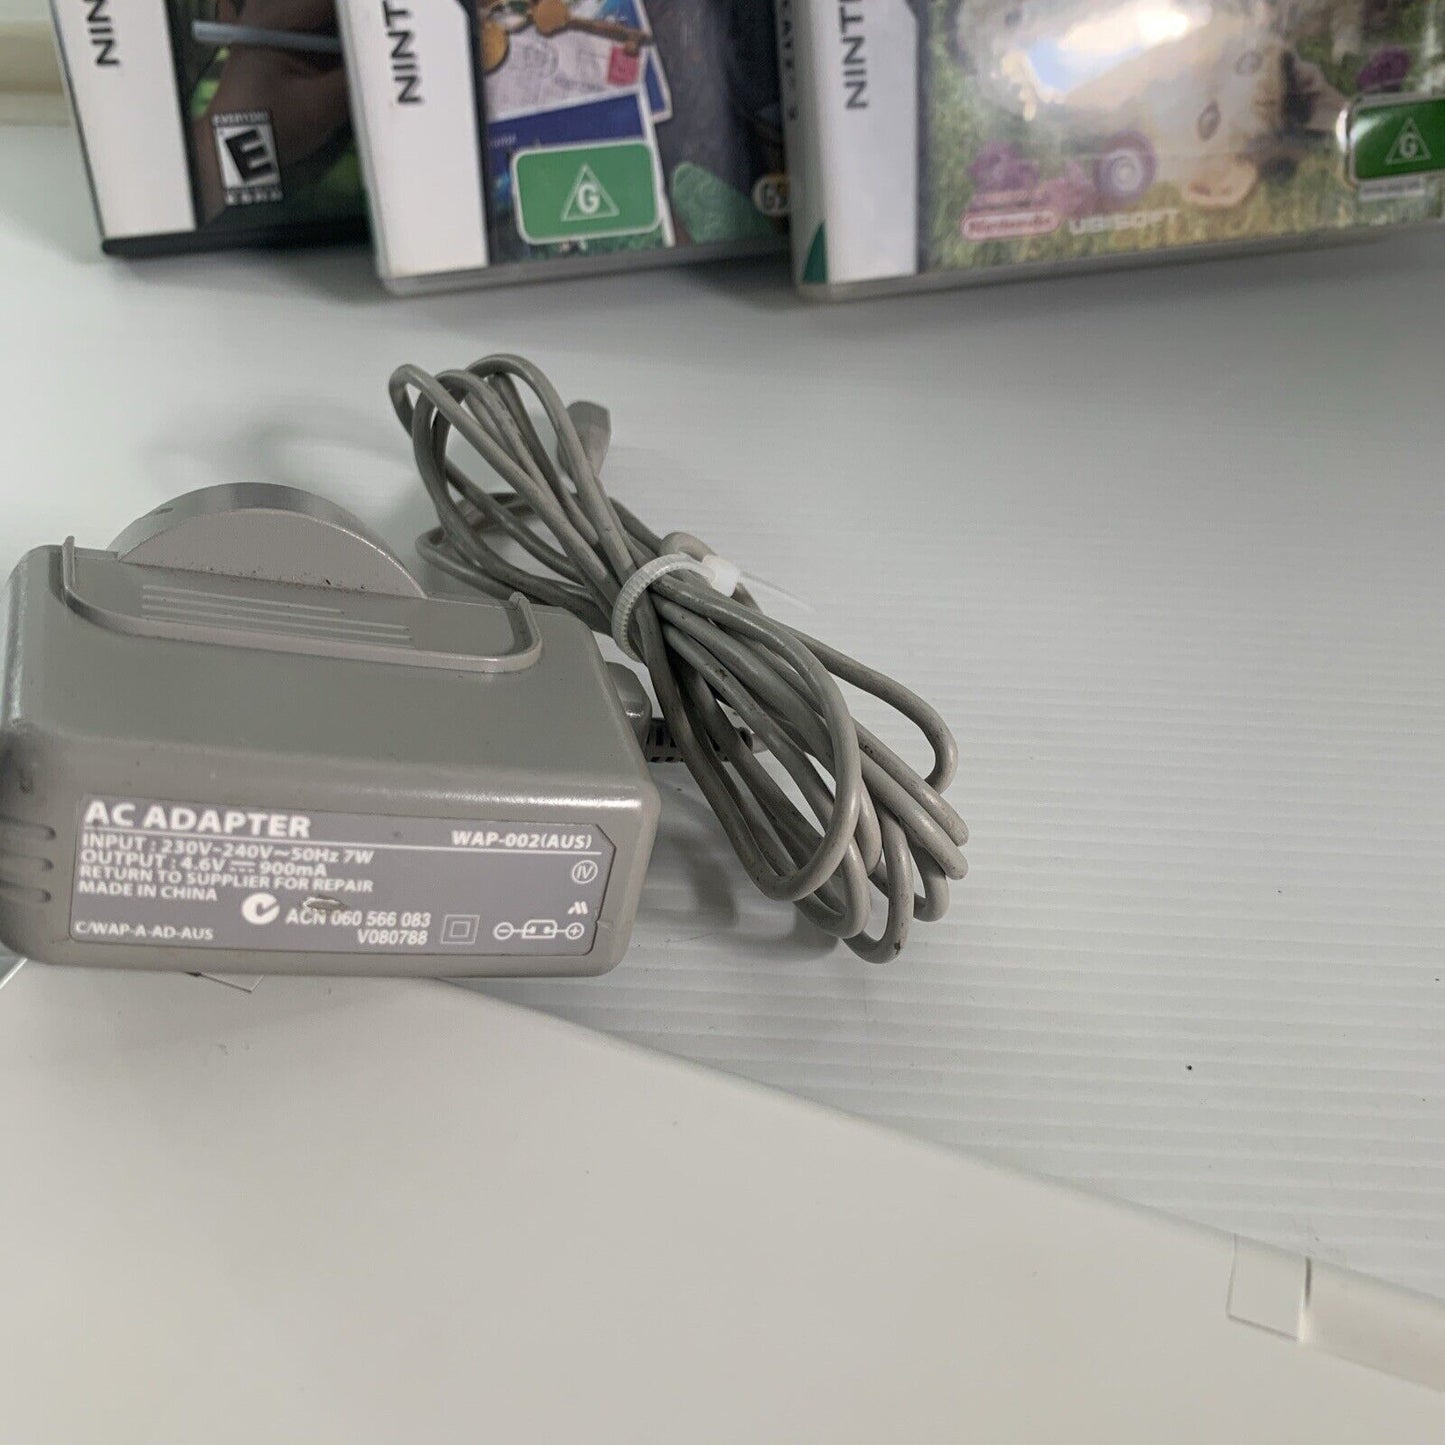 Nintendo Console DSi White w' Stylus Pen Original Charger C/TWL-AUS + 3 DS Games